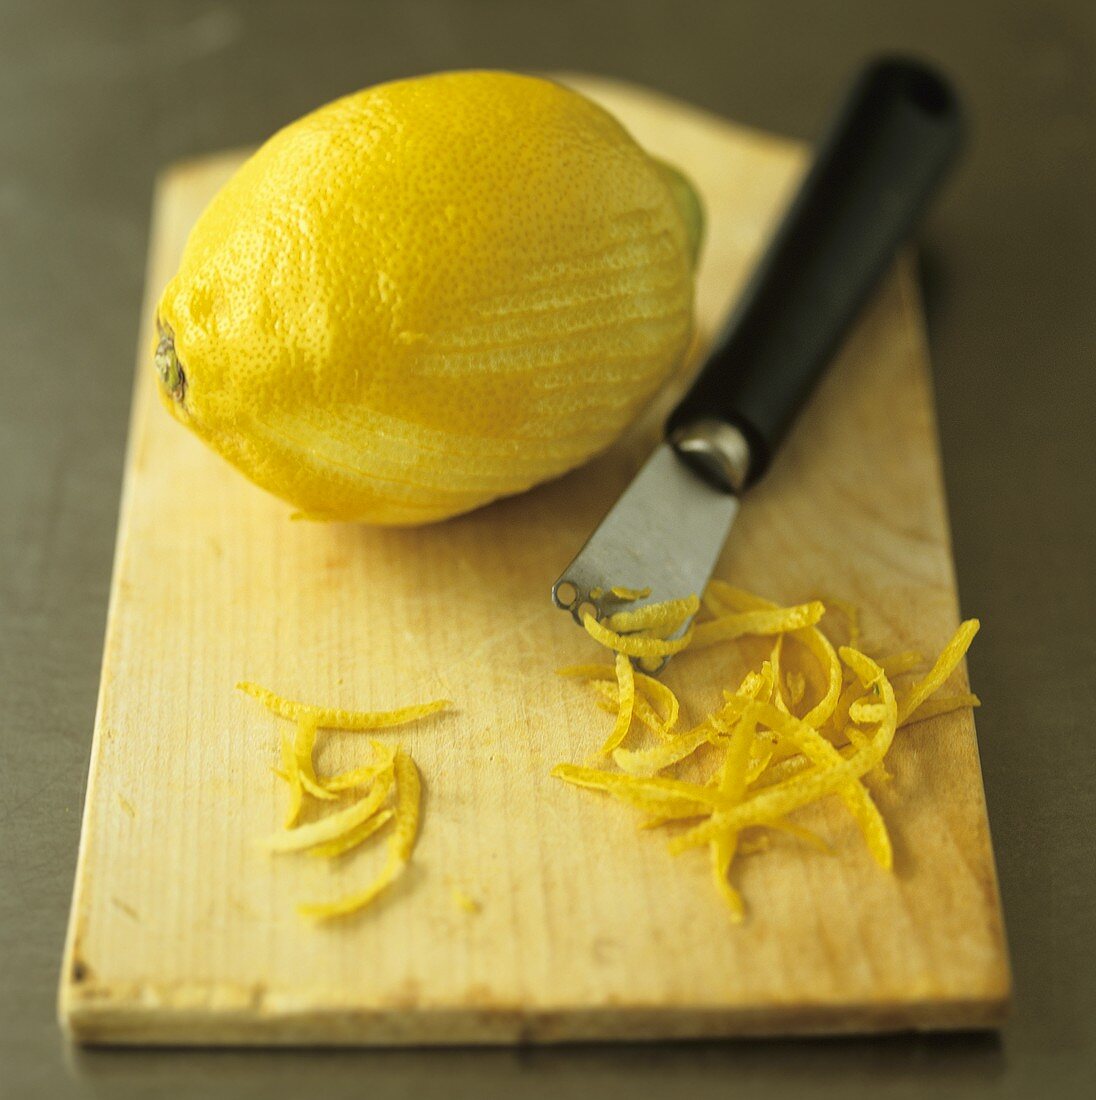 Zitrone, Zitronenzesten und Zestenreisser auf Schneidebrett